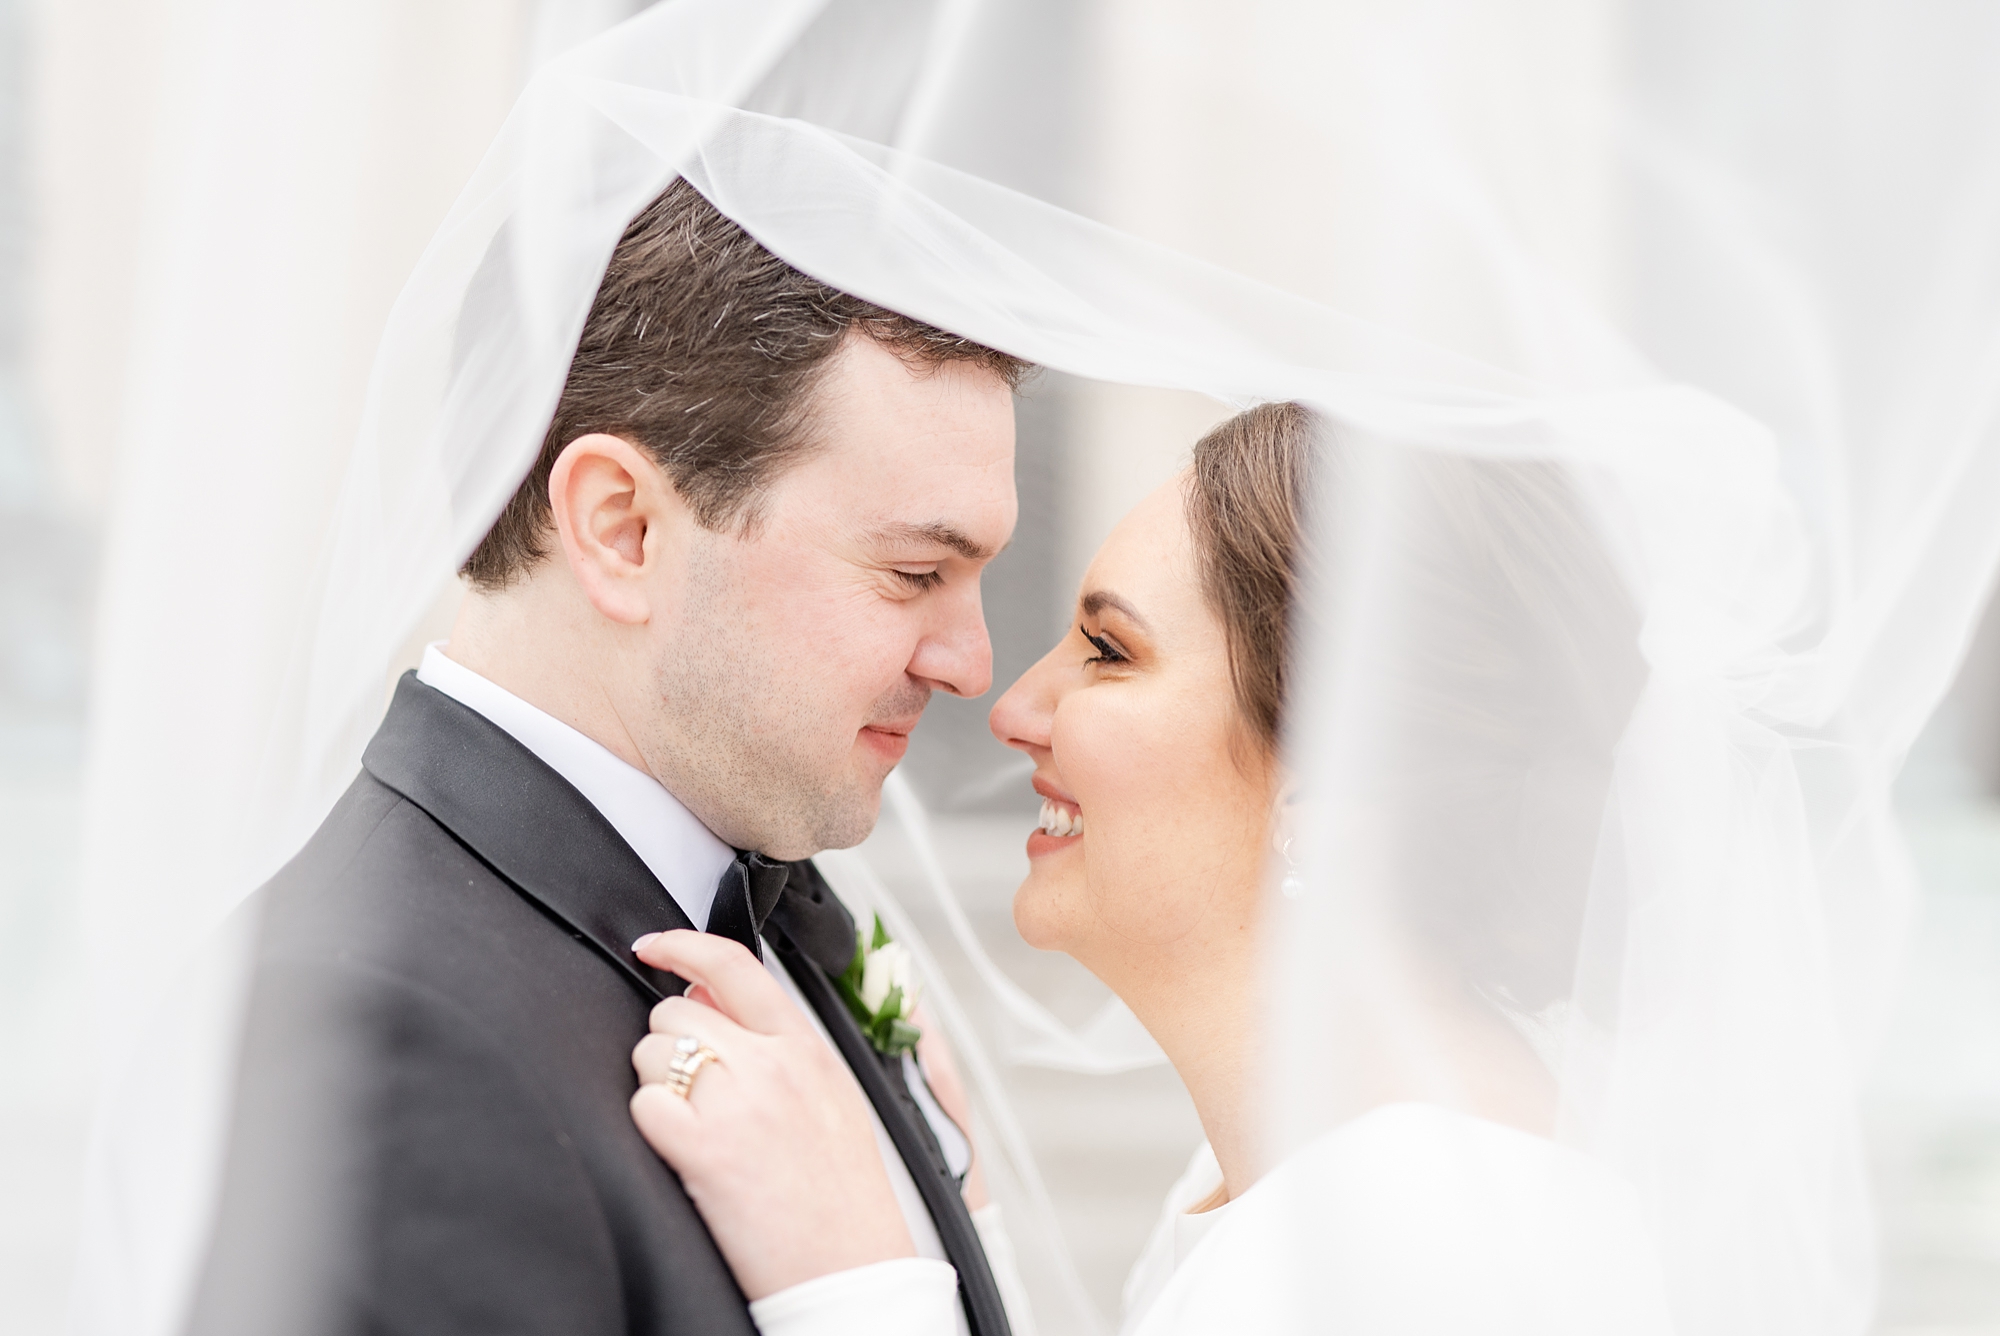 Dayton Masonic Center wedding portraits of newlyweds under veil